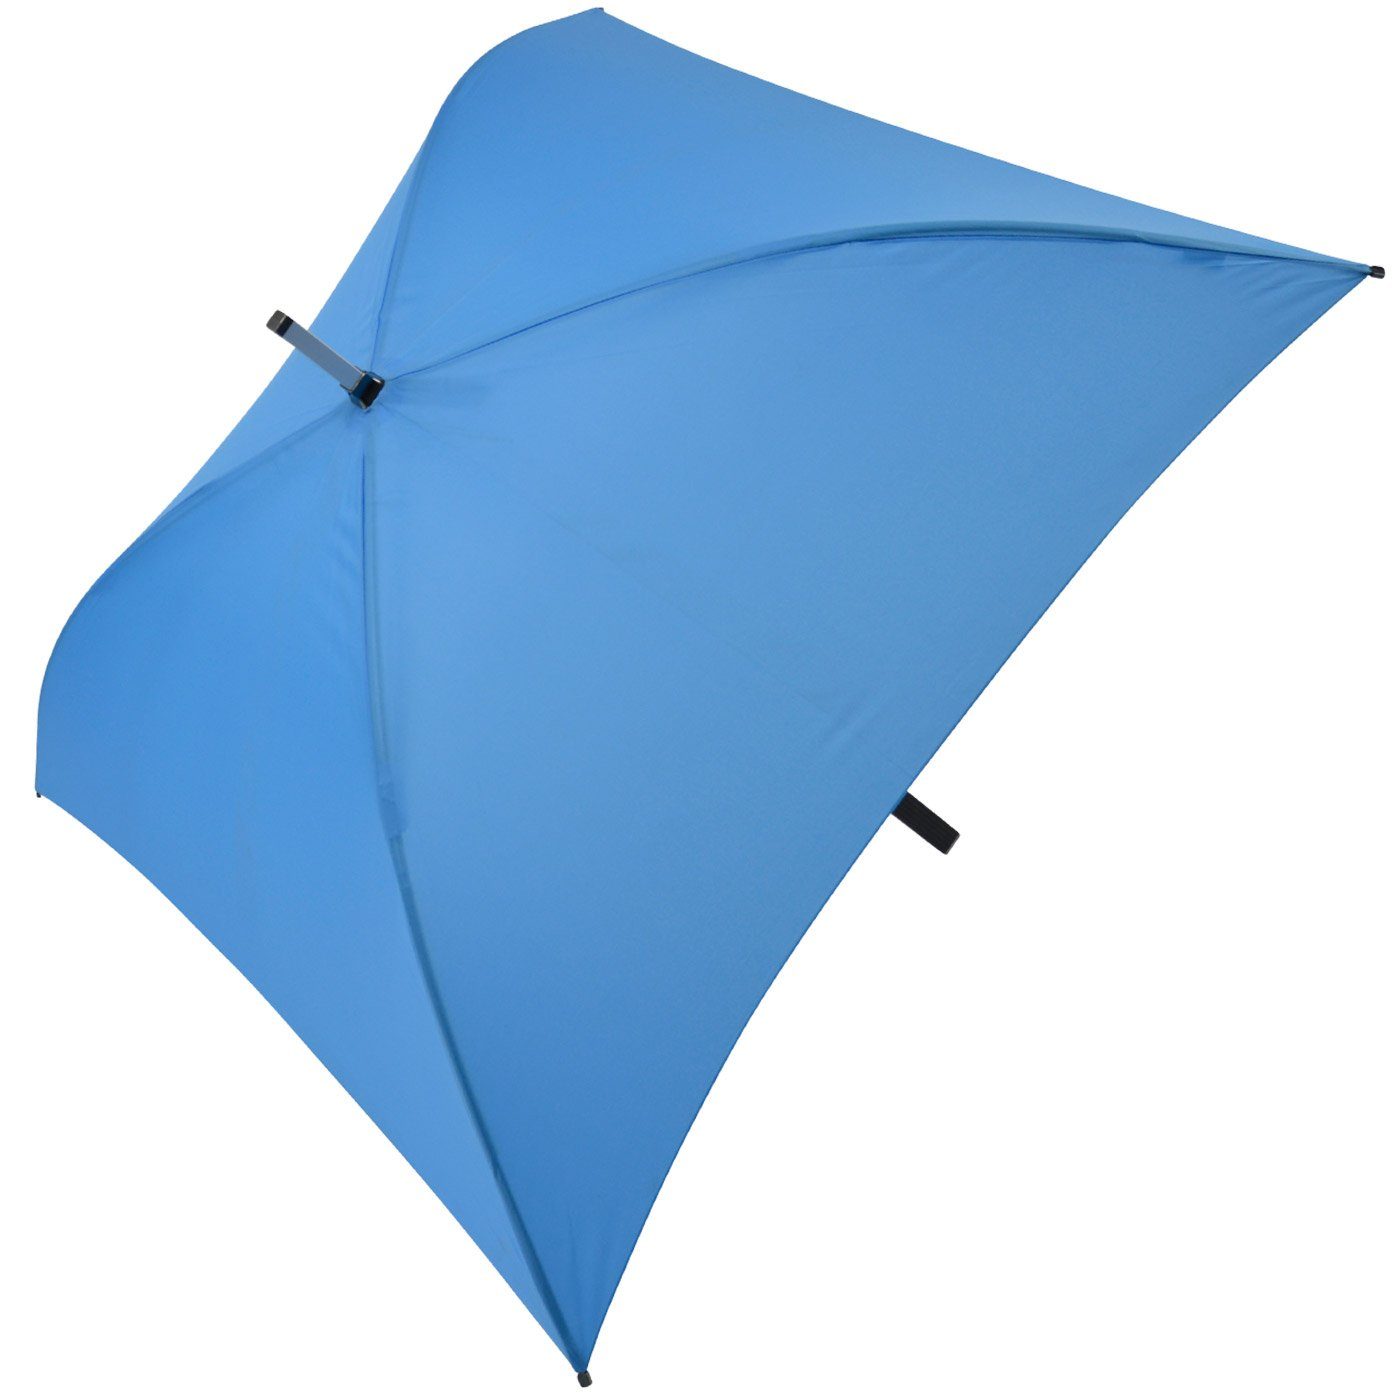 Impliva Langregenschirm All der ganz Regenschirm voll Square® besondere quadratischer hellblau Regenschirm